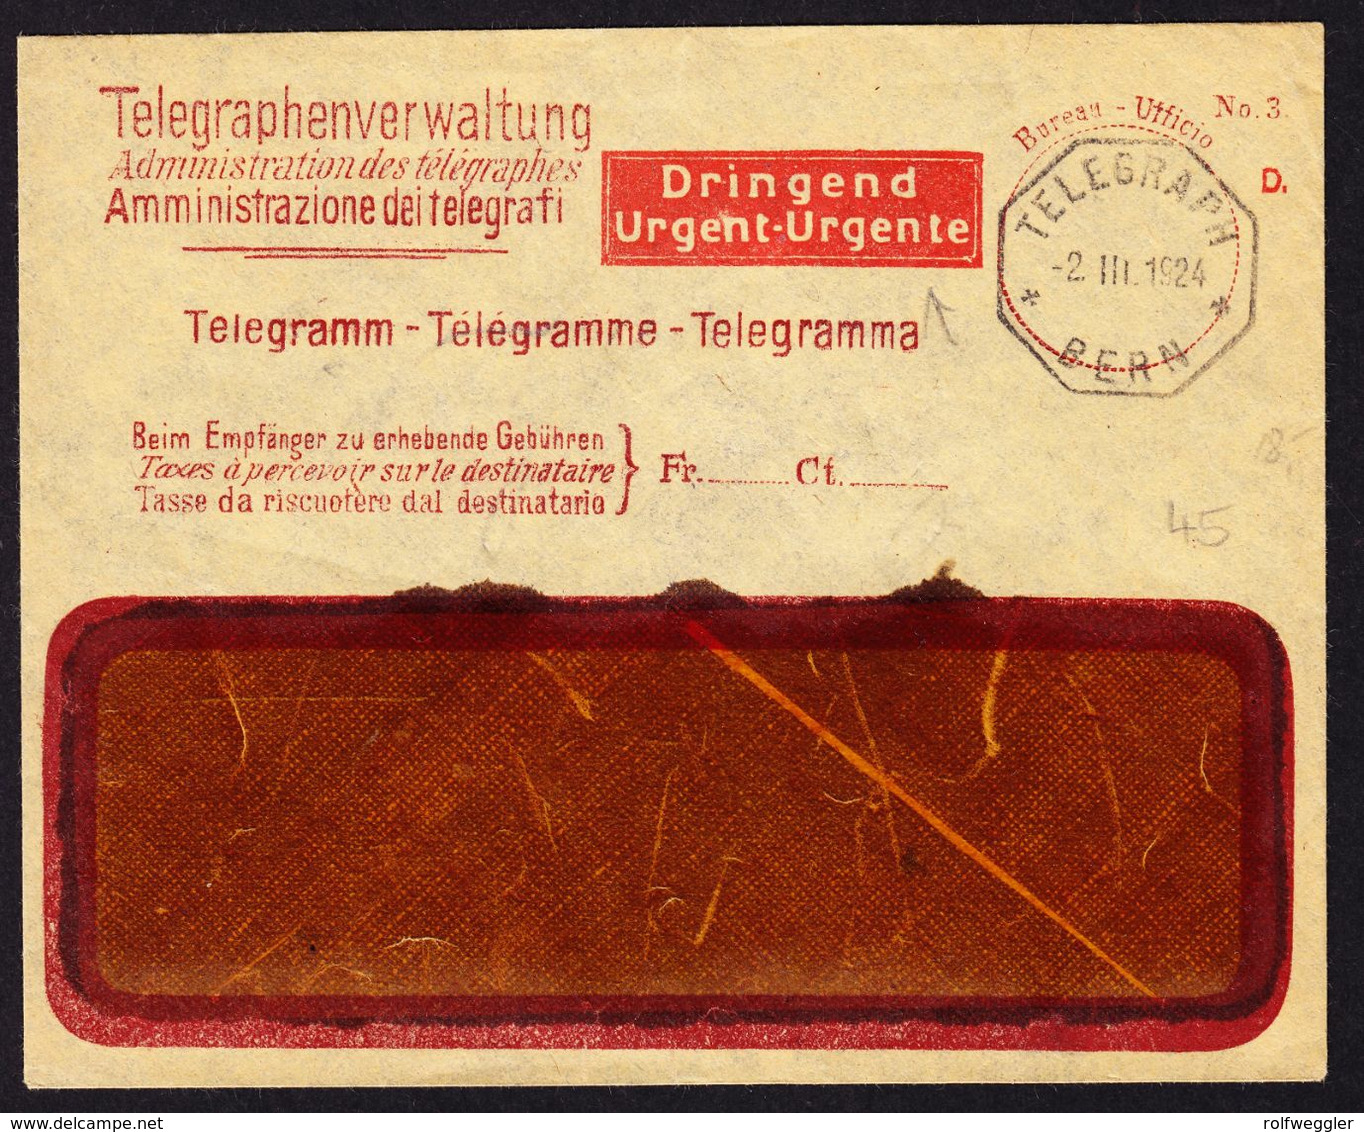 1924 Fenstercouvert Der Telegrafenverwaltung Mit Zudruck "Dringend". Stempel 2.III.1924 Bern - Telégrafo